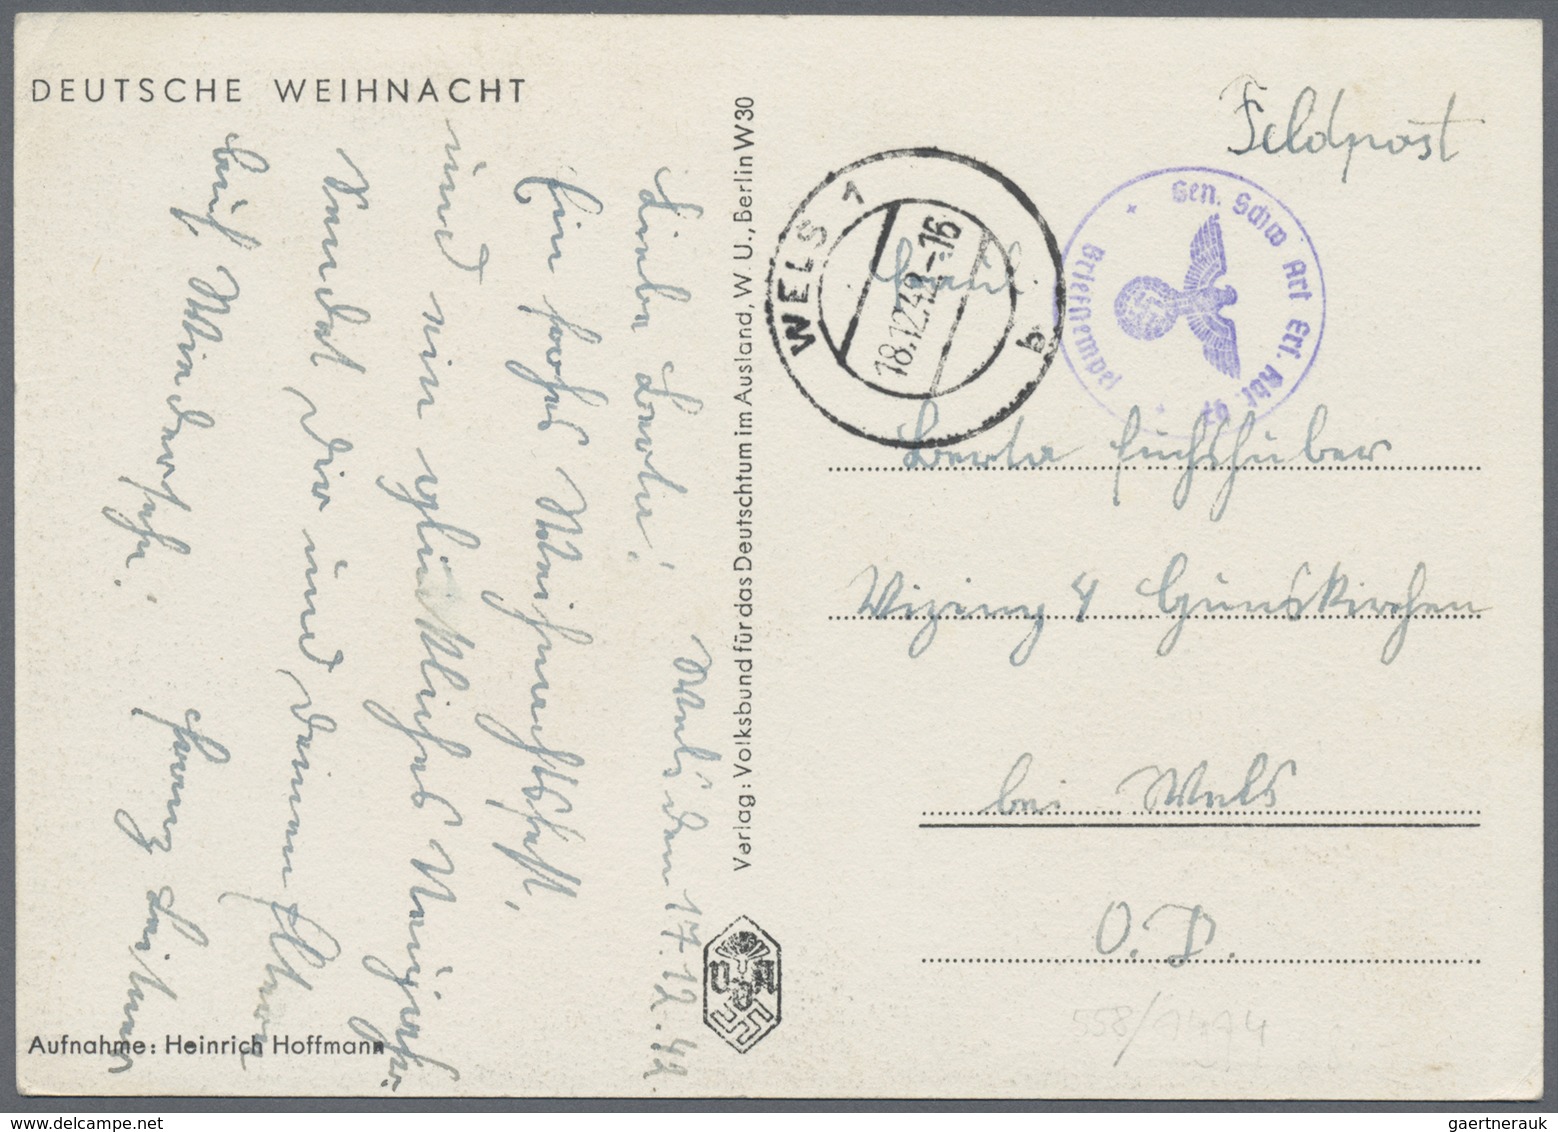 Ansichtskarten: Propaganda: 1942, "Deutsche Weihnacht" Abbildung Hitler Mit Tannenbaum, VDA-Karte Au - Parteien & Wahlen